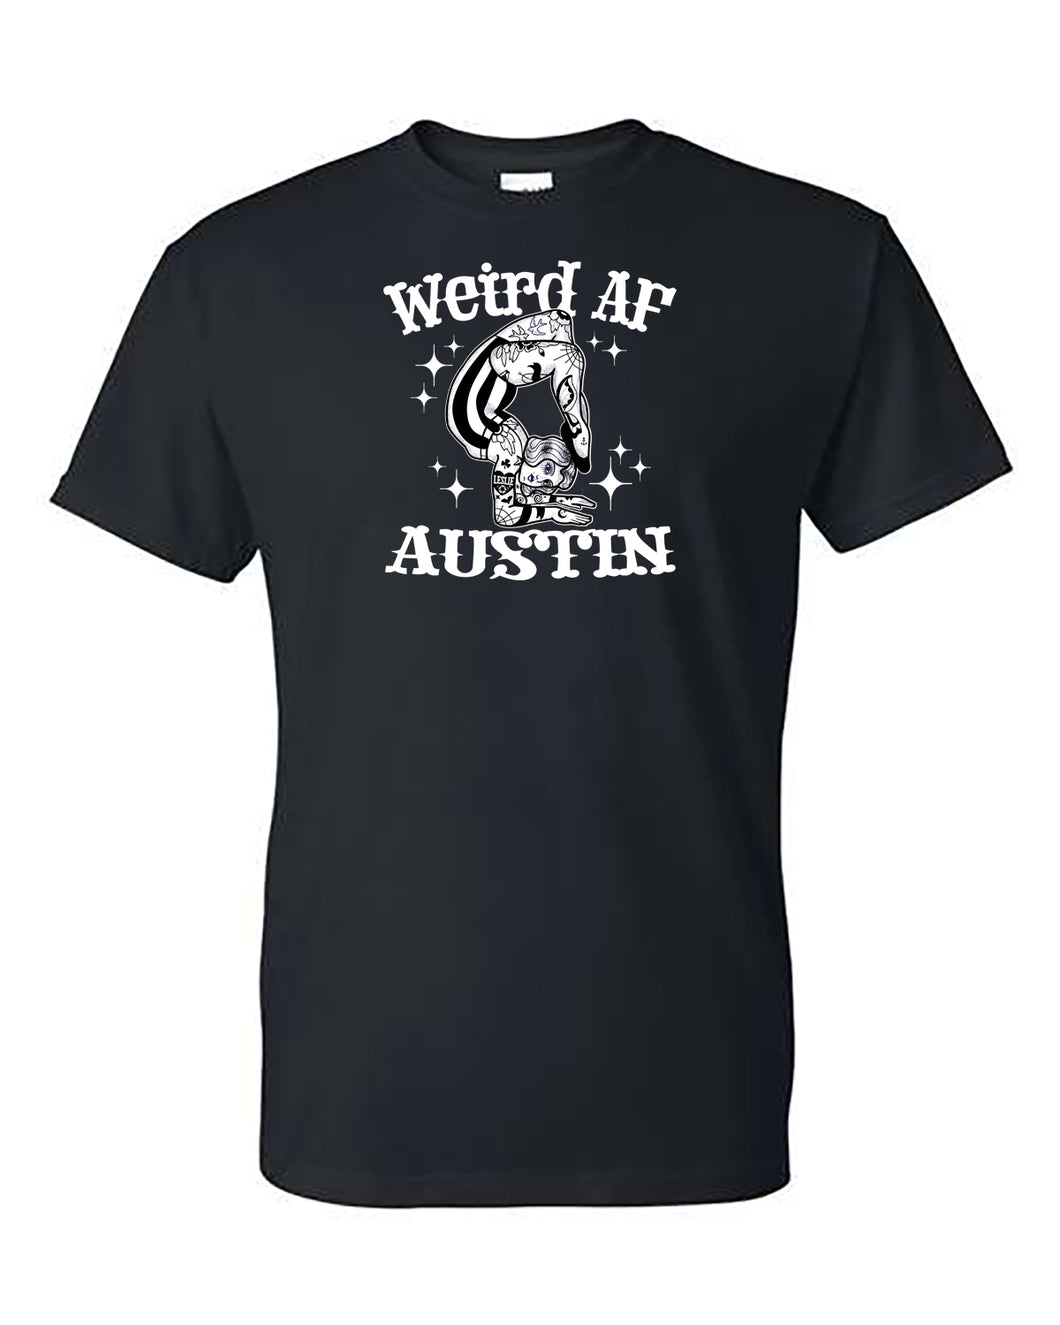 Weird AF Austin T-shirt